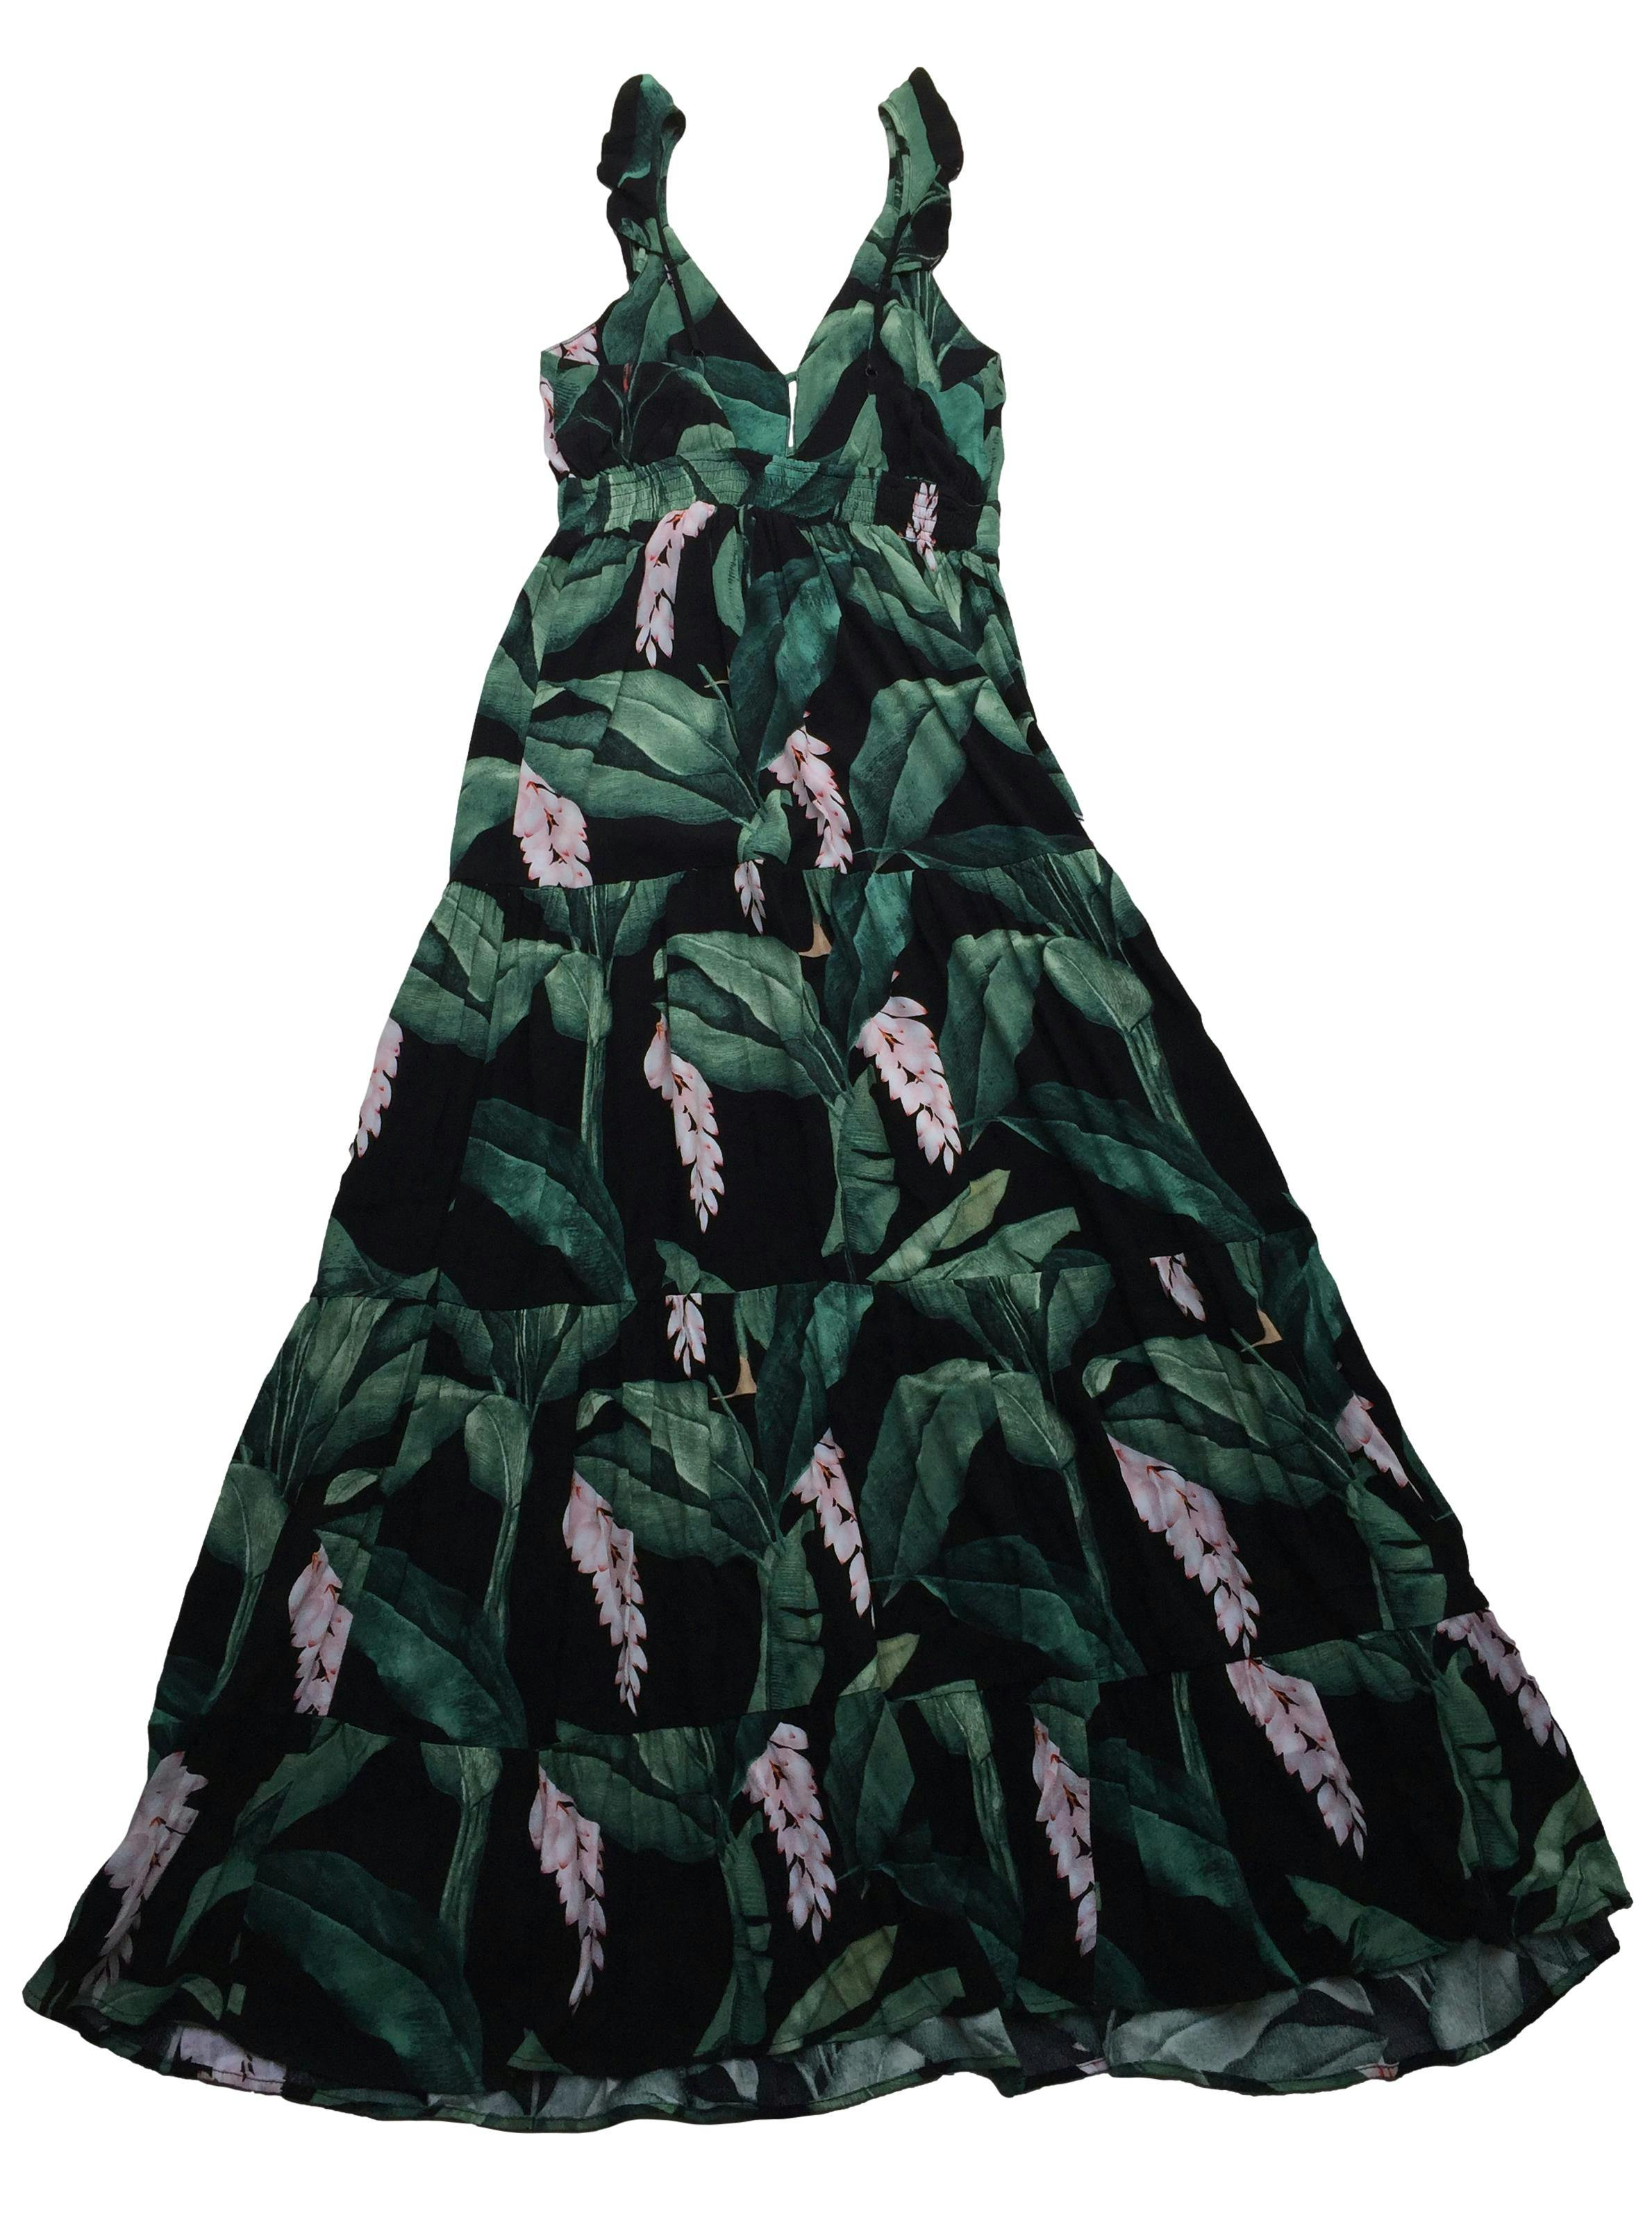 Vestido largo Marquis negro con hojas verdes y rosa, panal de abeja en espalda. Busto 90cm Largo 140cm